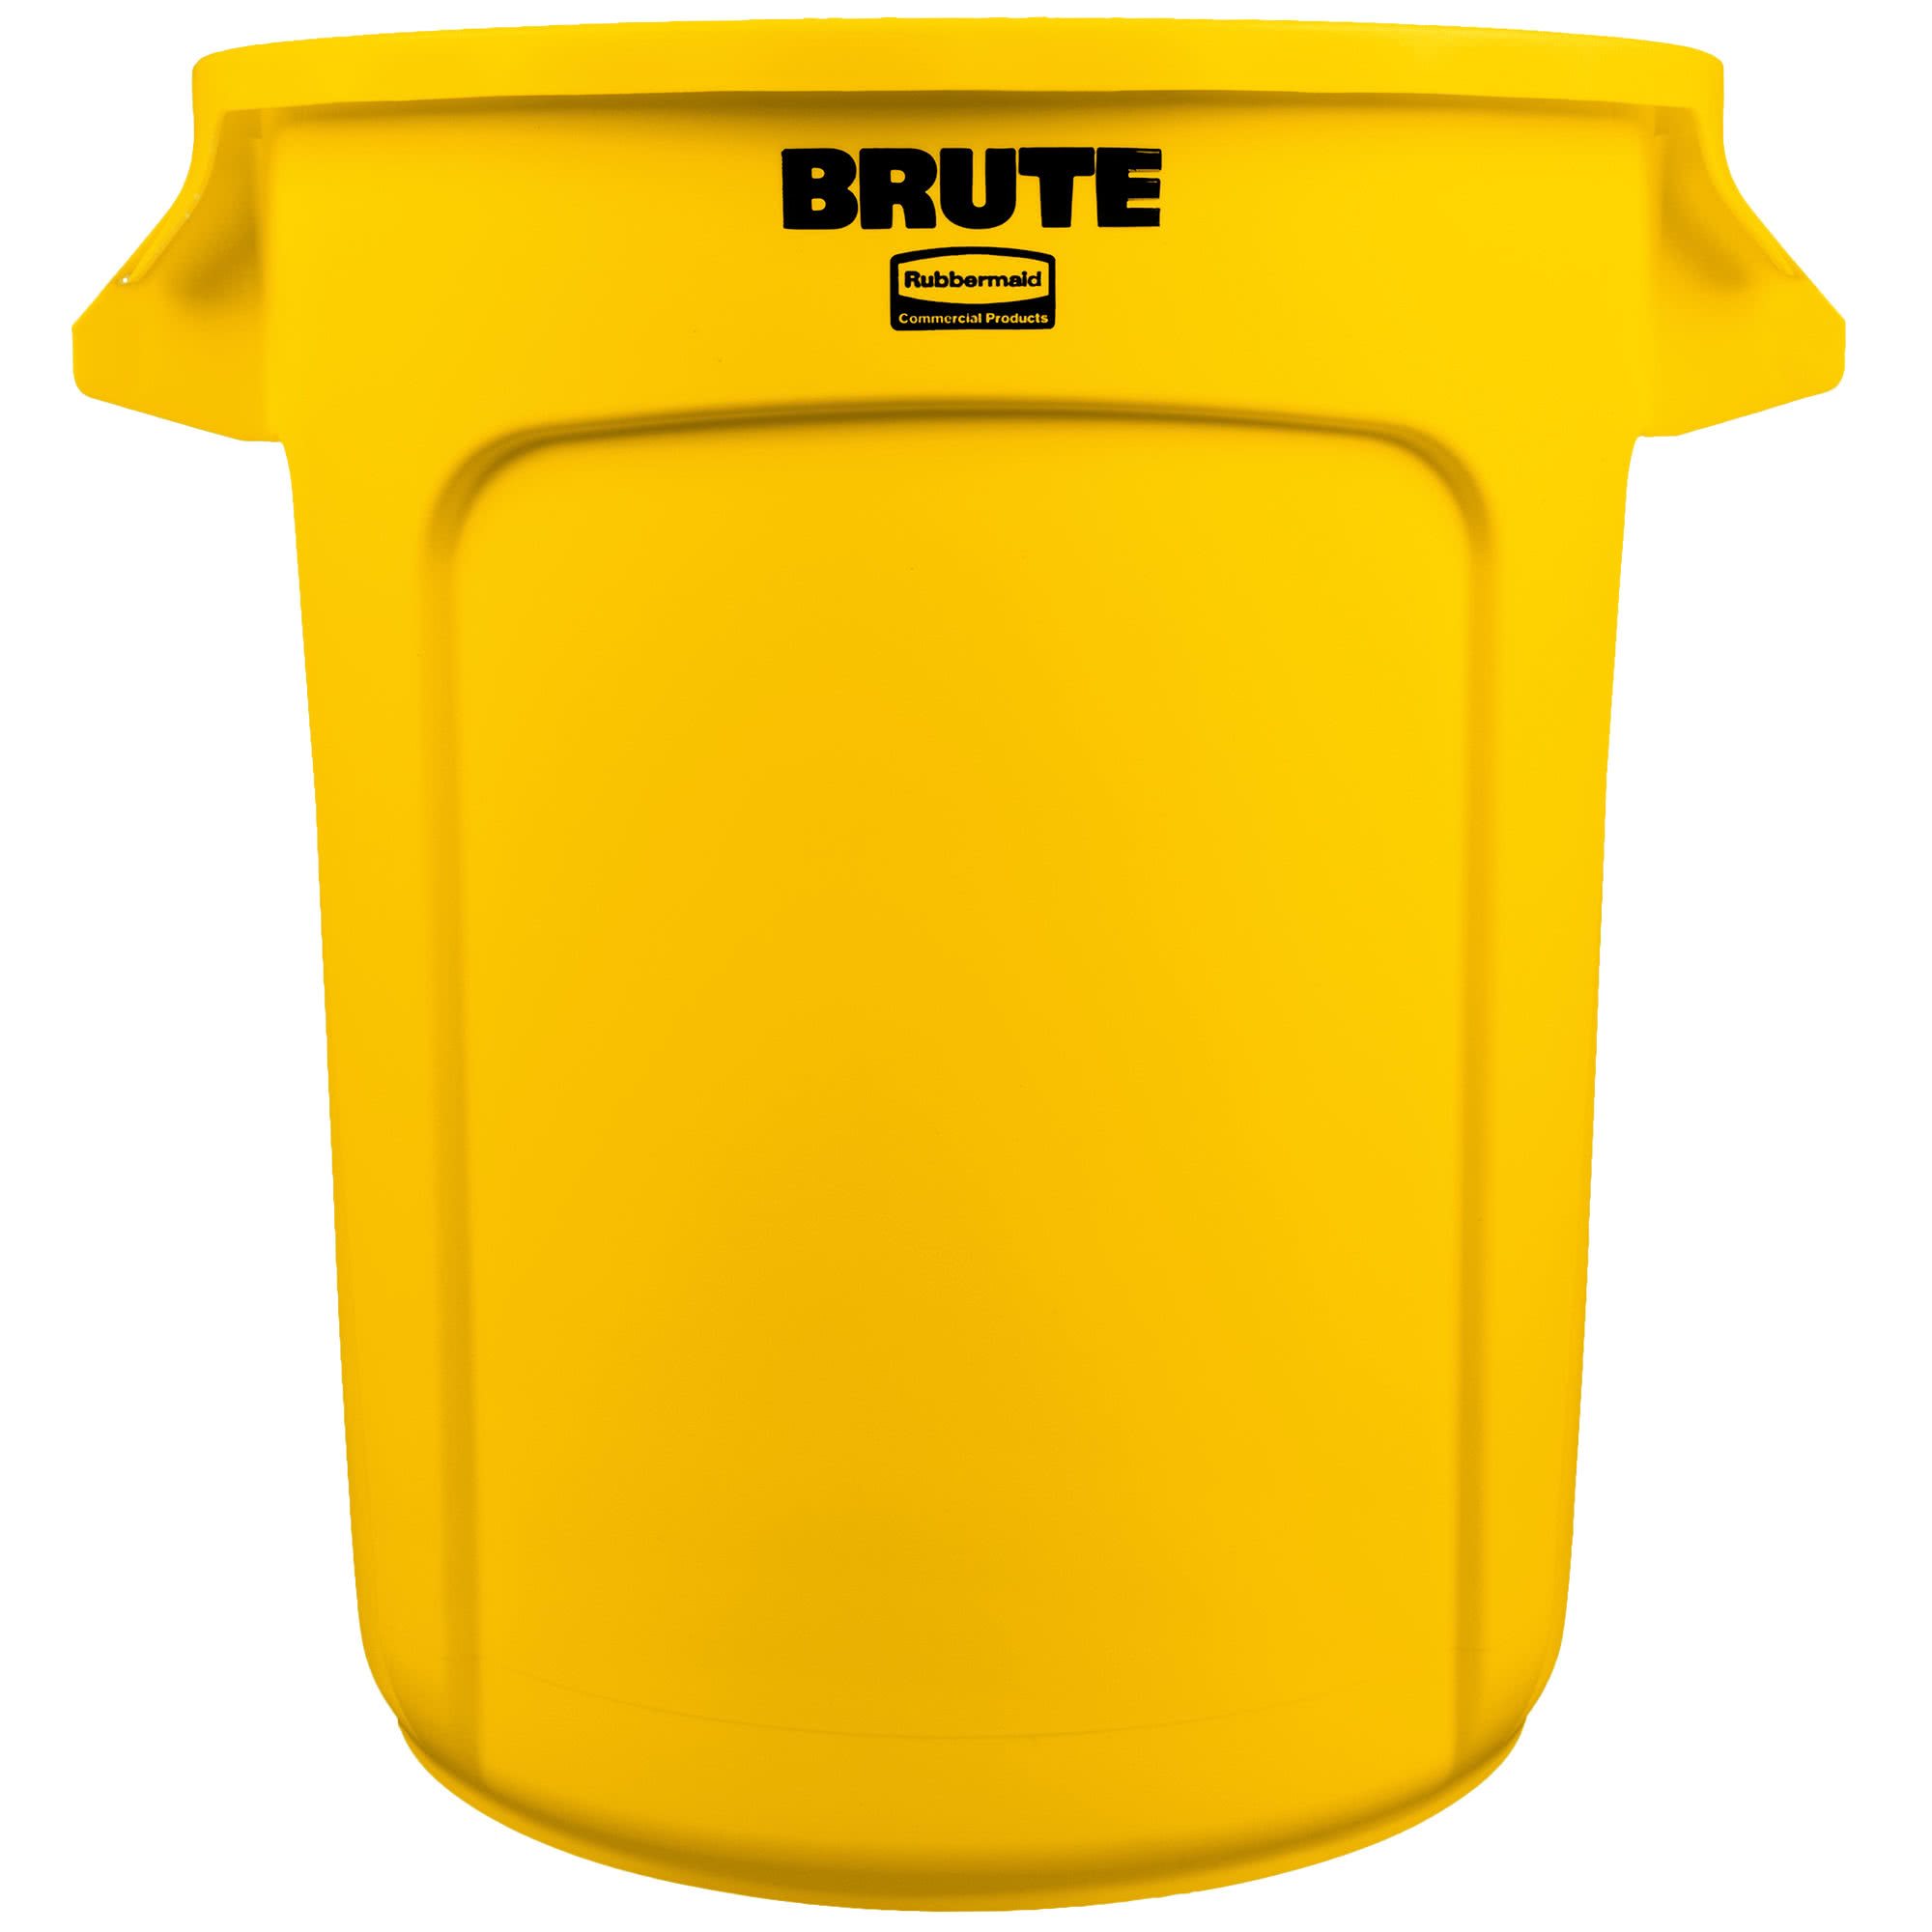 Rubbermaid FG261000YEL contenedor Brute color amarillo con capacidad para 10 galones